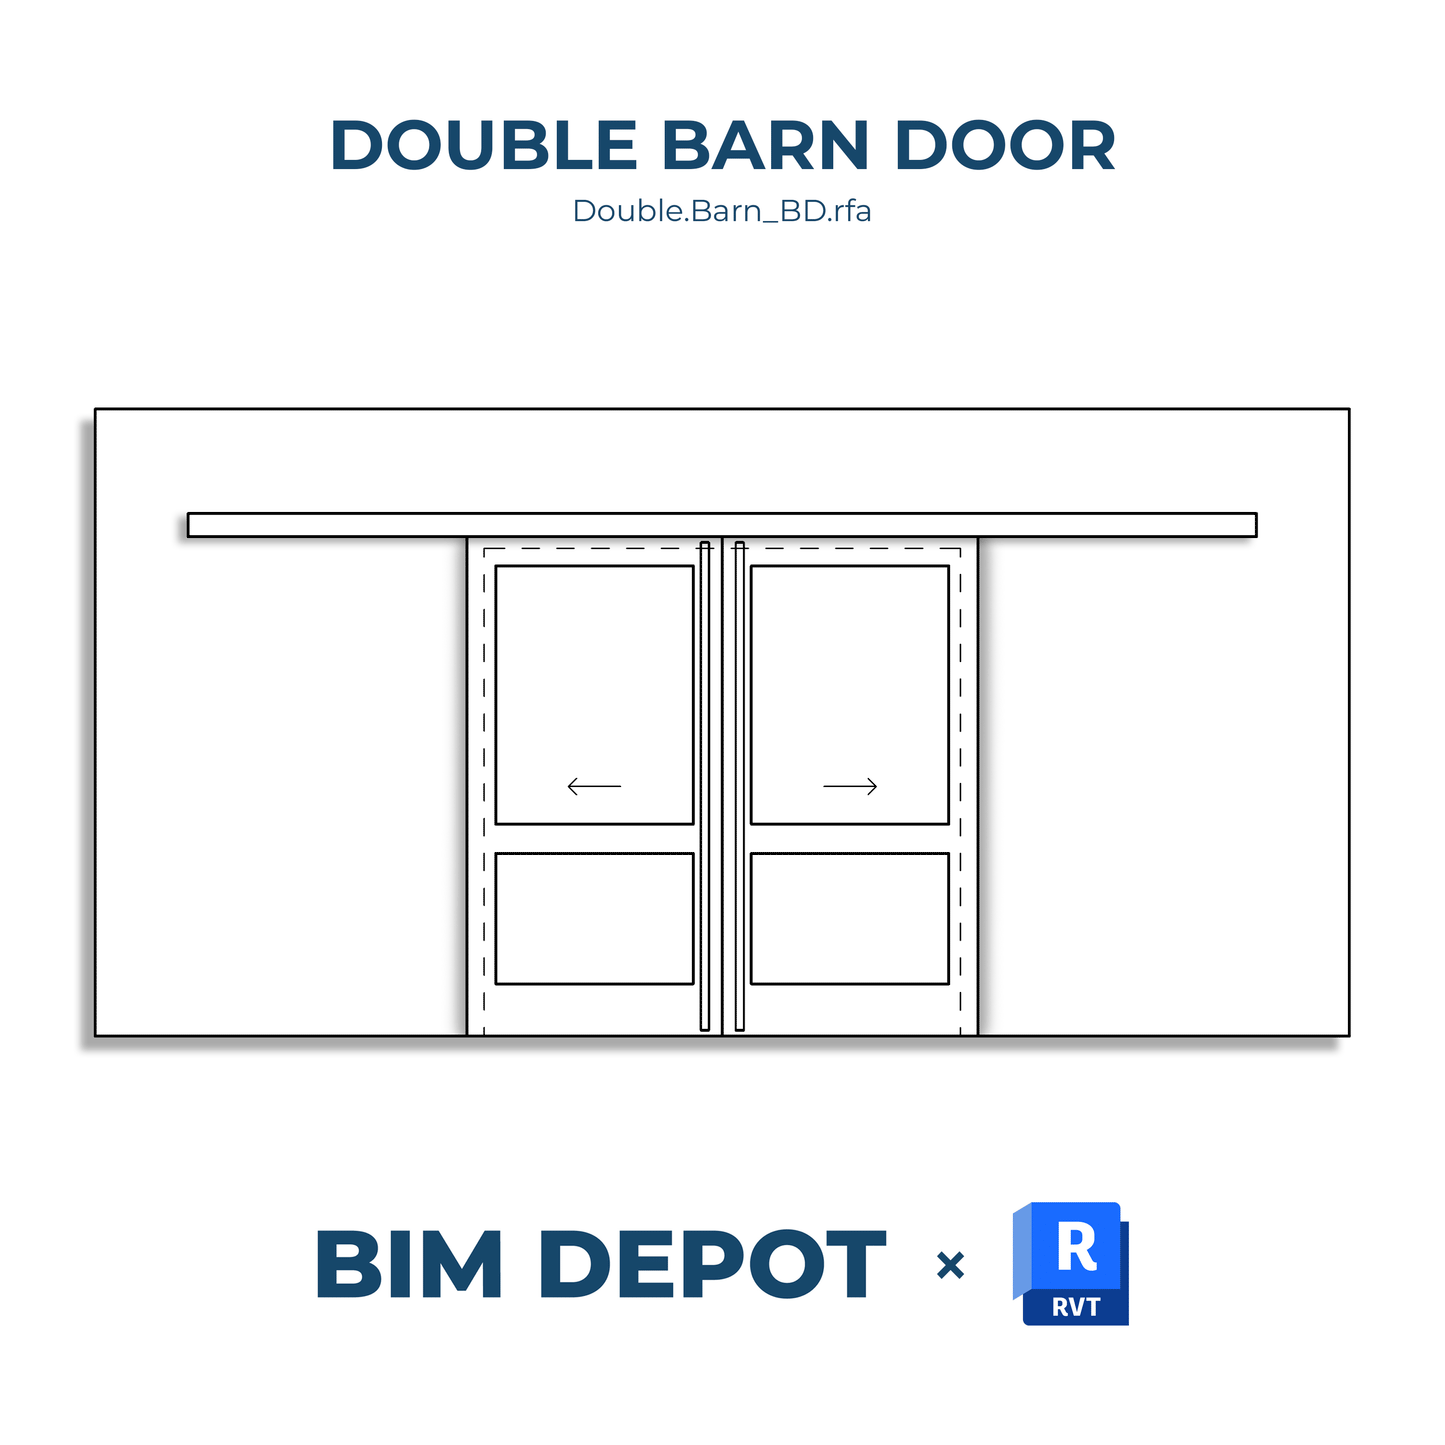 Double Barn Door